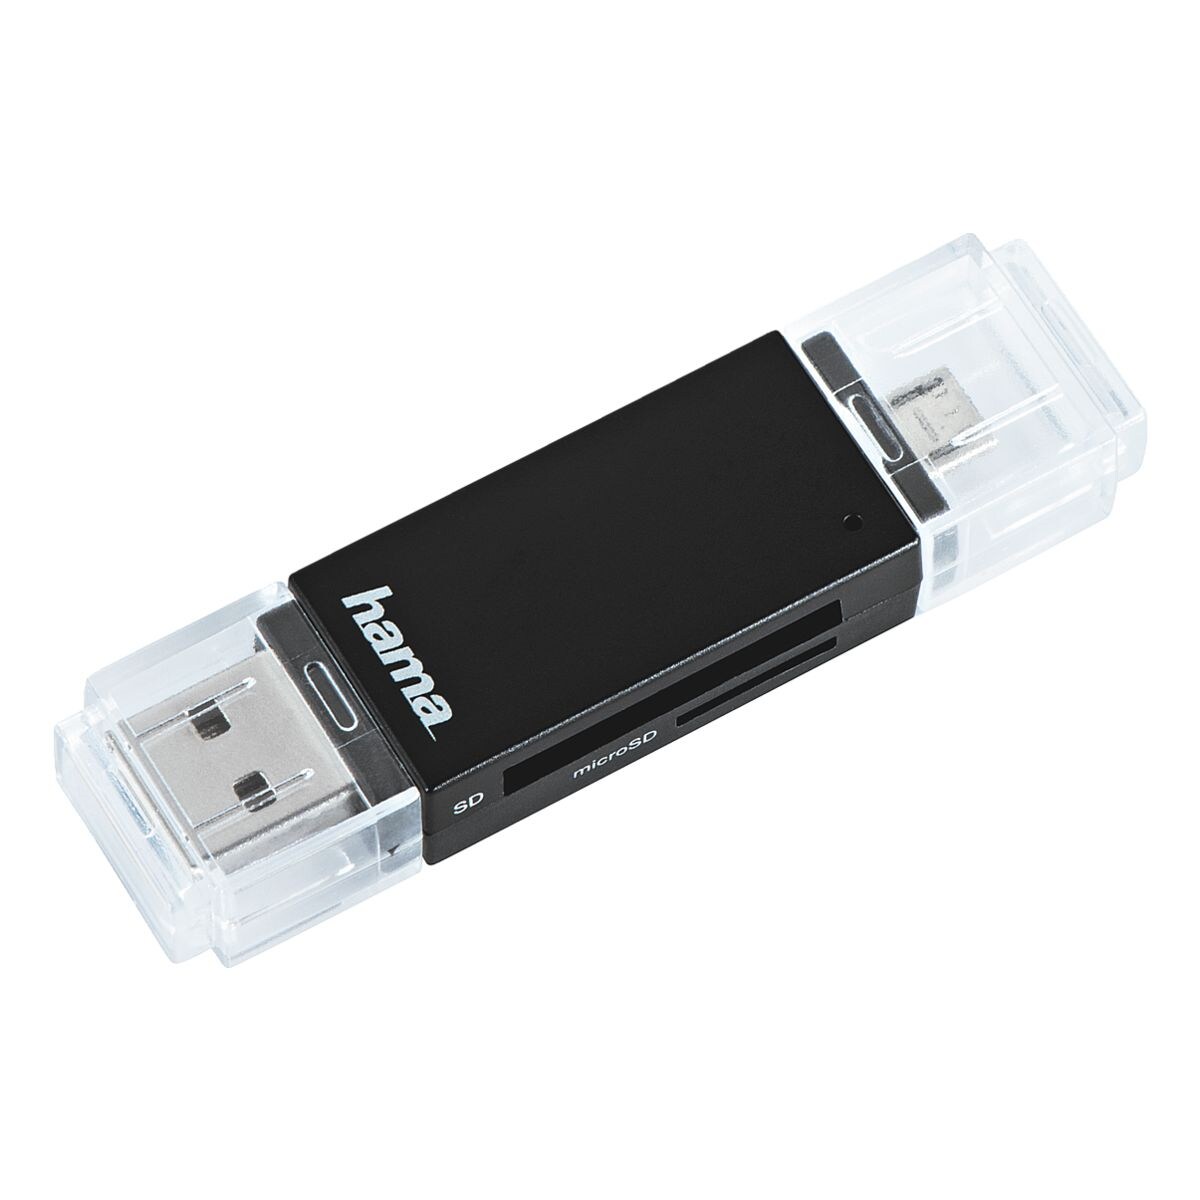 Hama Lecteur de cartes OTG USB-2.0  Basic 